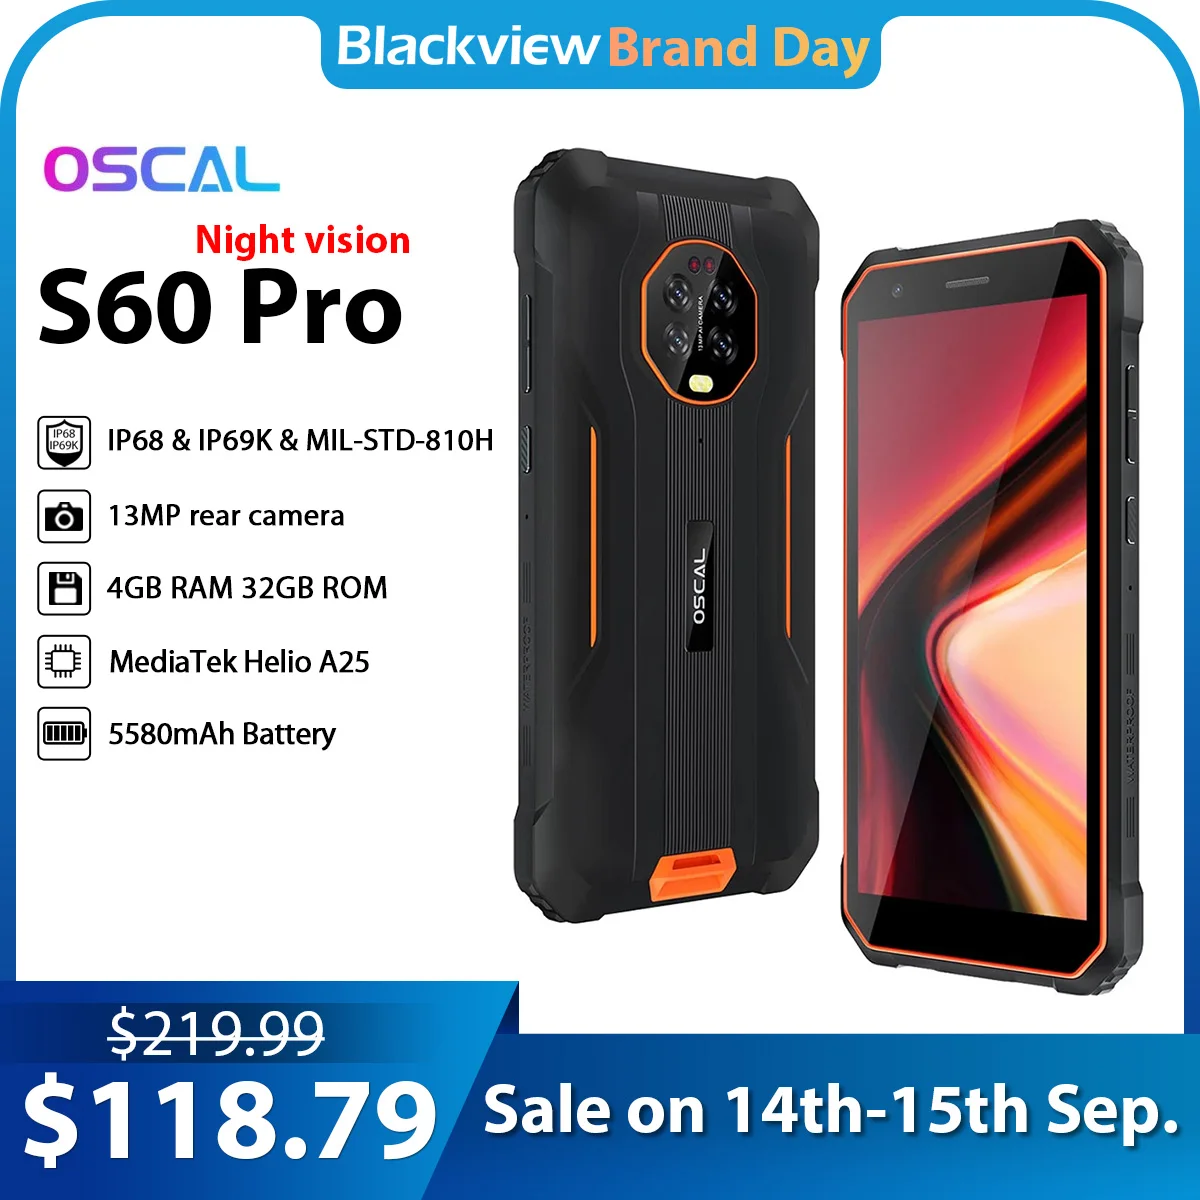 Blackview-Smartphone Oscal S60 Pro, teléfono móvil con visión nocturna, resistente al agua IP68, pantalla de 5,7 pulgadas, 4GB + 32GB, batería de 5580mAh, Android 11